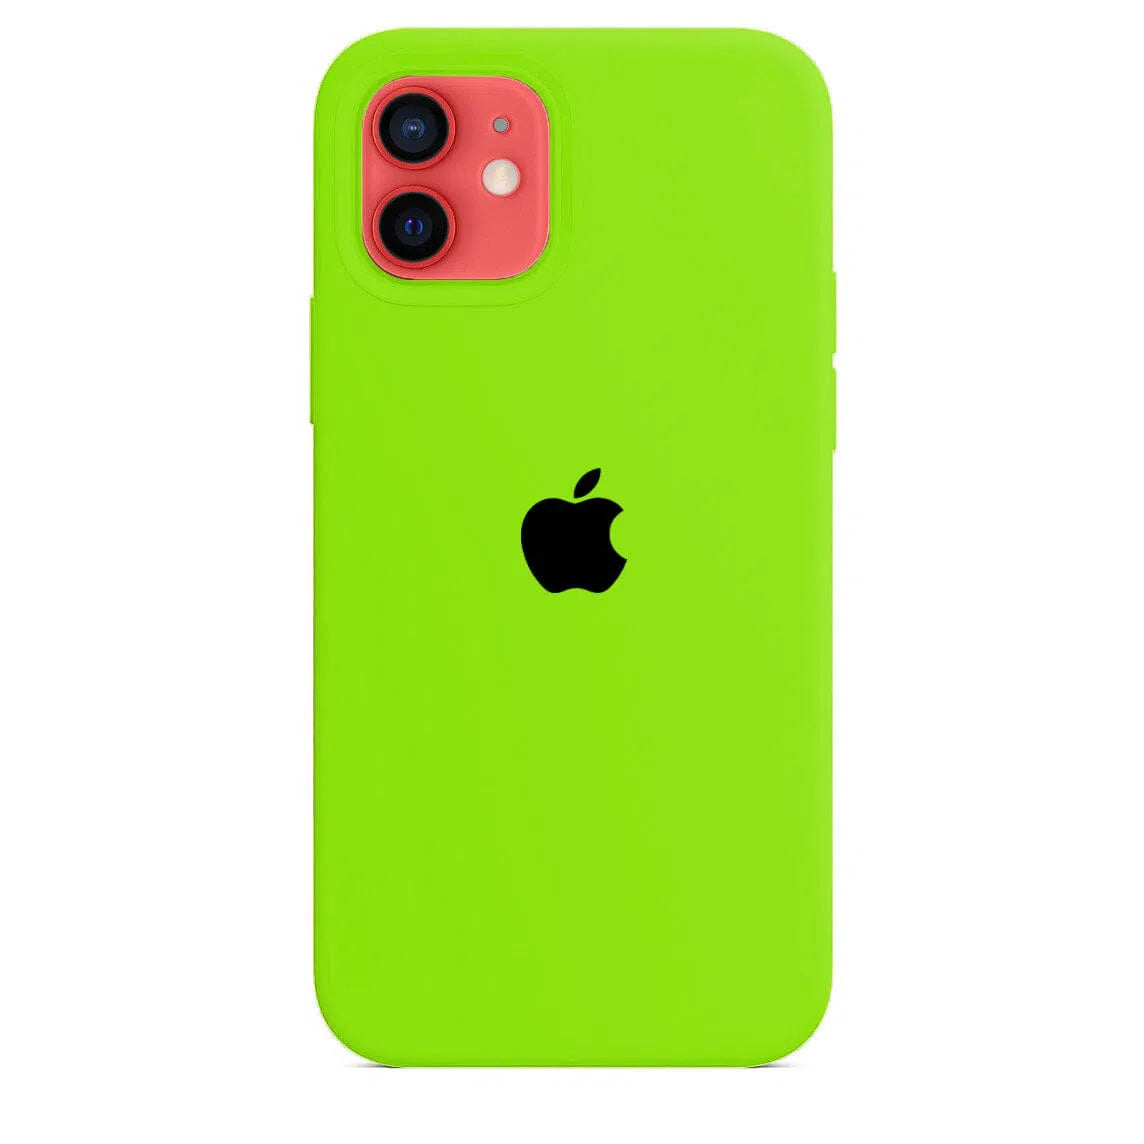 Husa iPhone Silicone Case Crazy Green (Verde) Anca's Store 12mini 